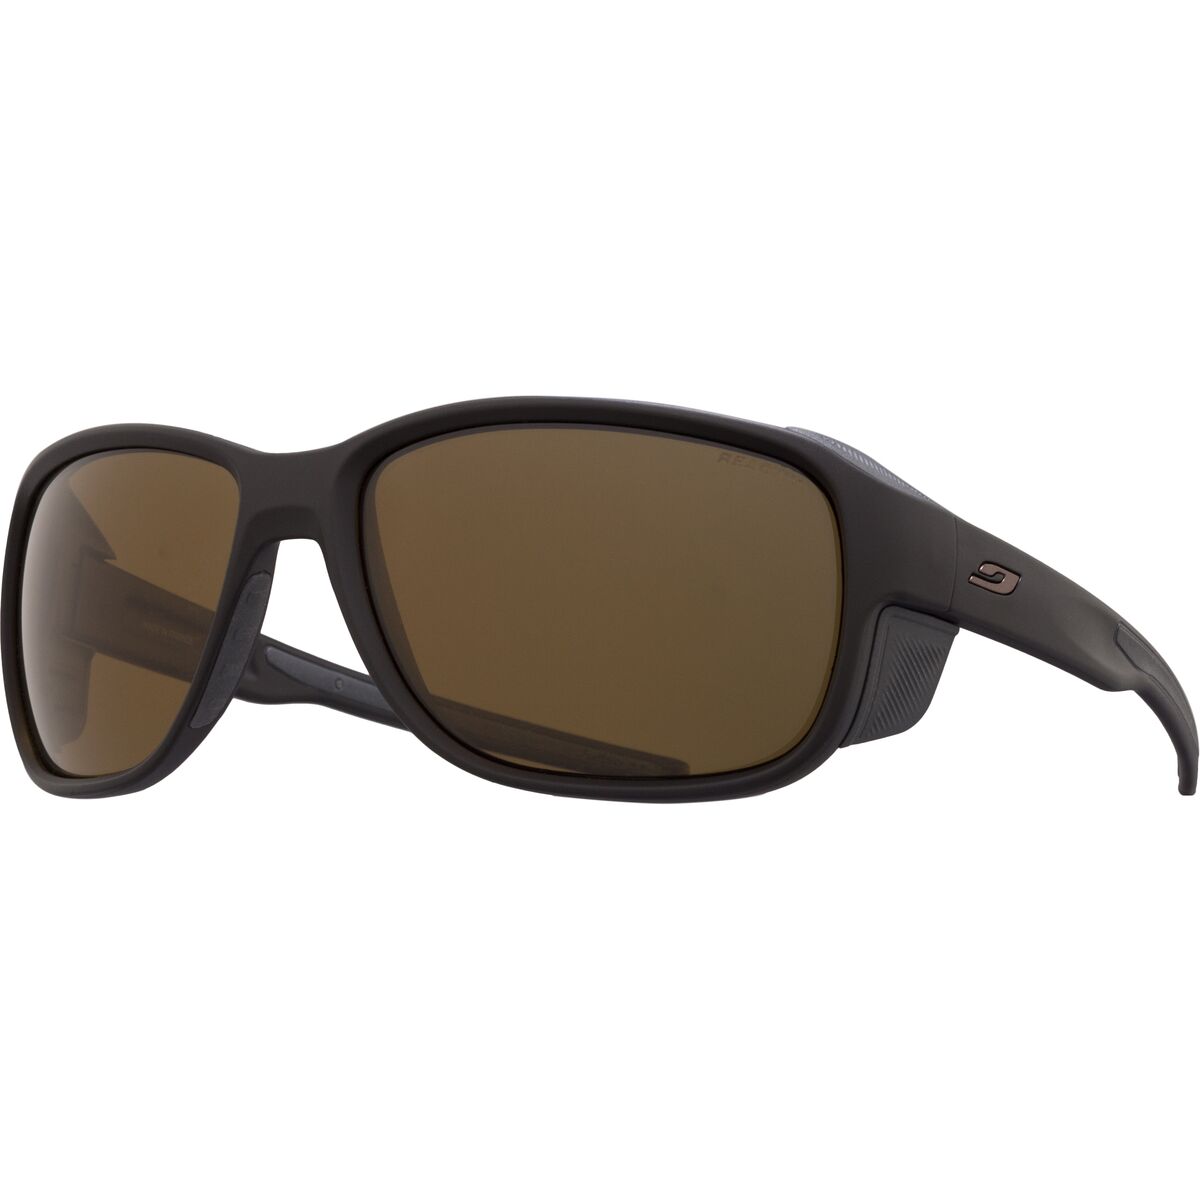 Julbo Montebianco 2 Polarized Sunglasses Black REACTIV 2-4 Polarized, One Size - Men's